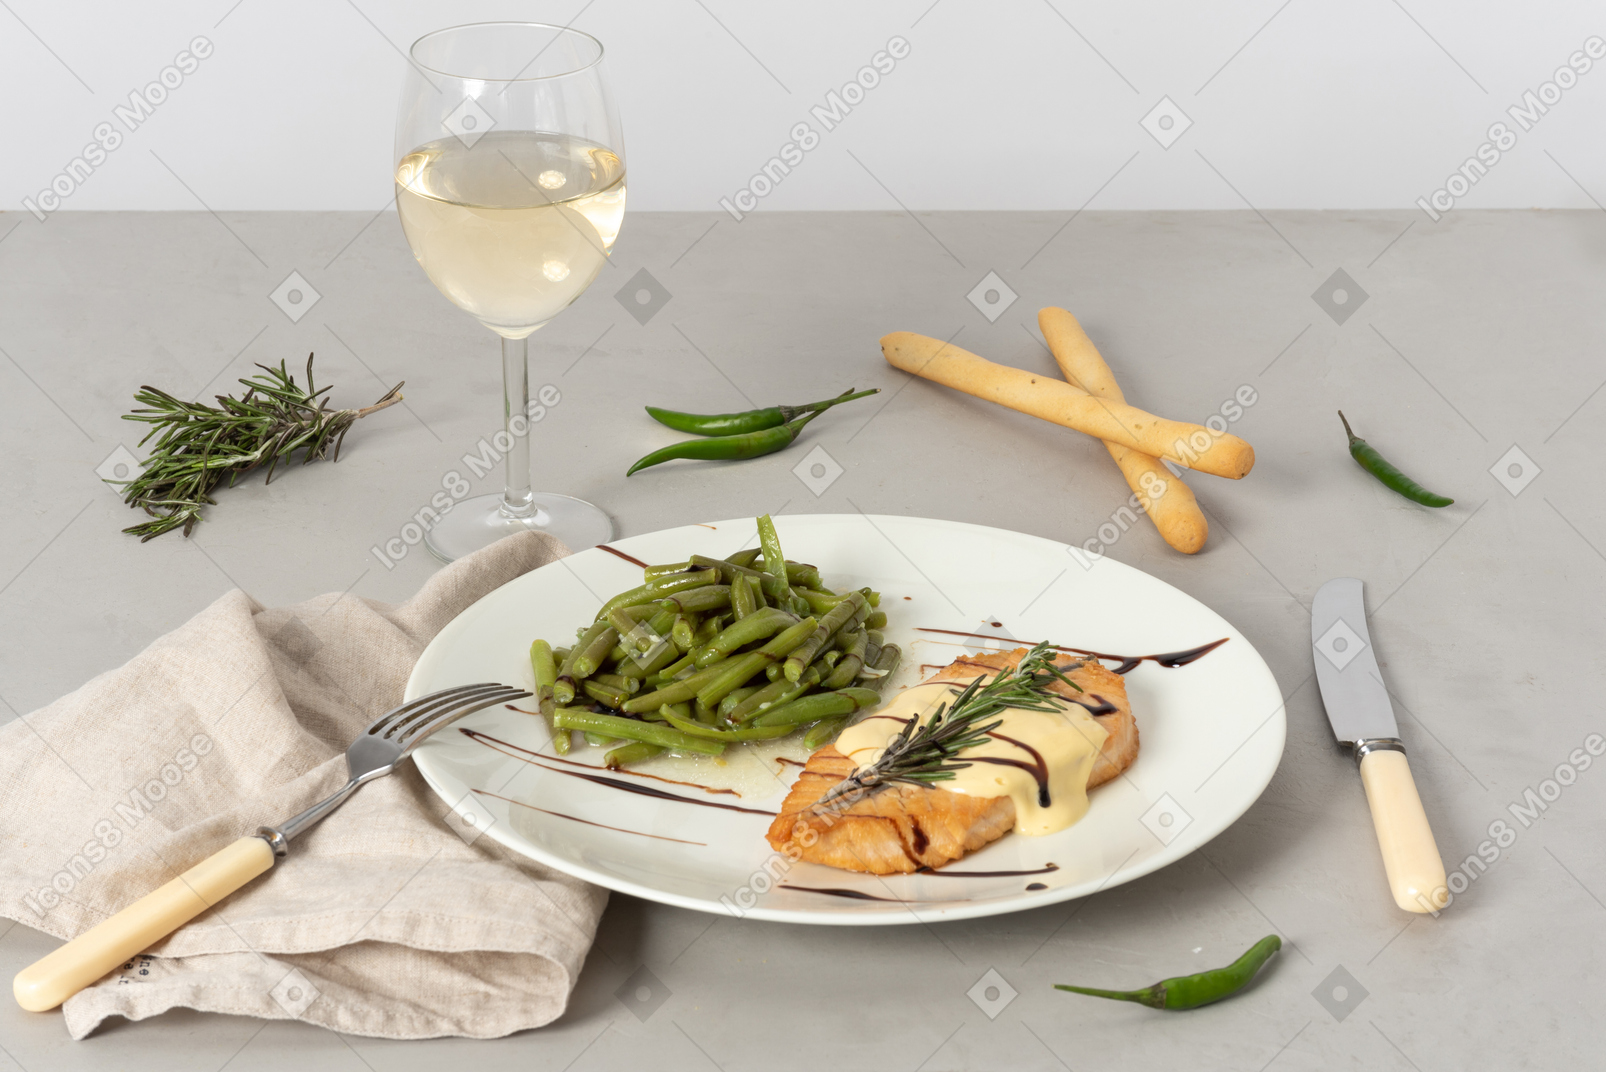 Piatto di pesce e fagiolini, bicchiere di vino bianco, grissini, forchetta e coltello